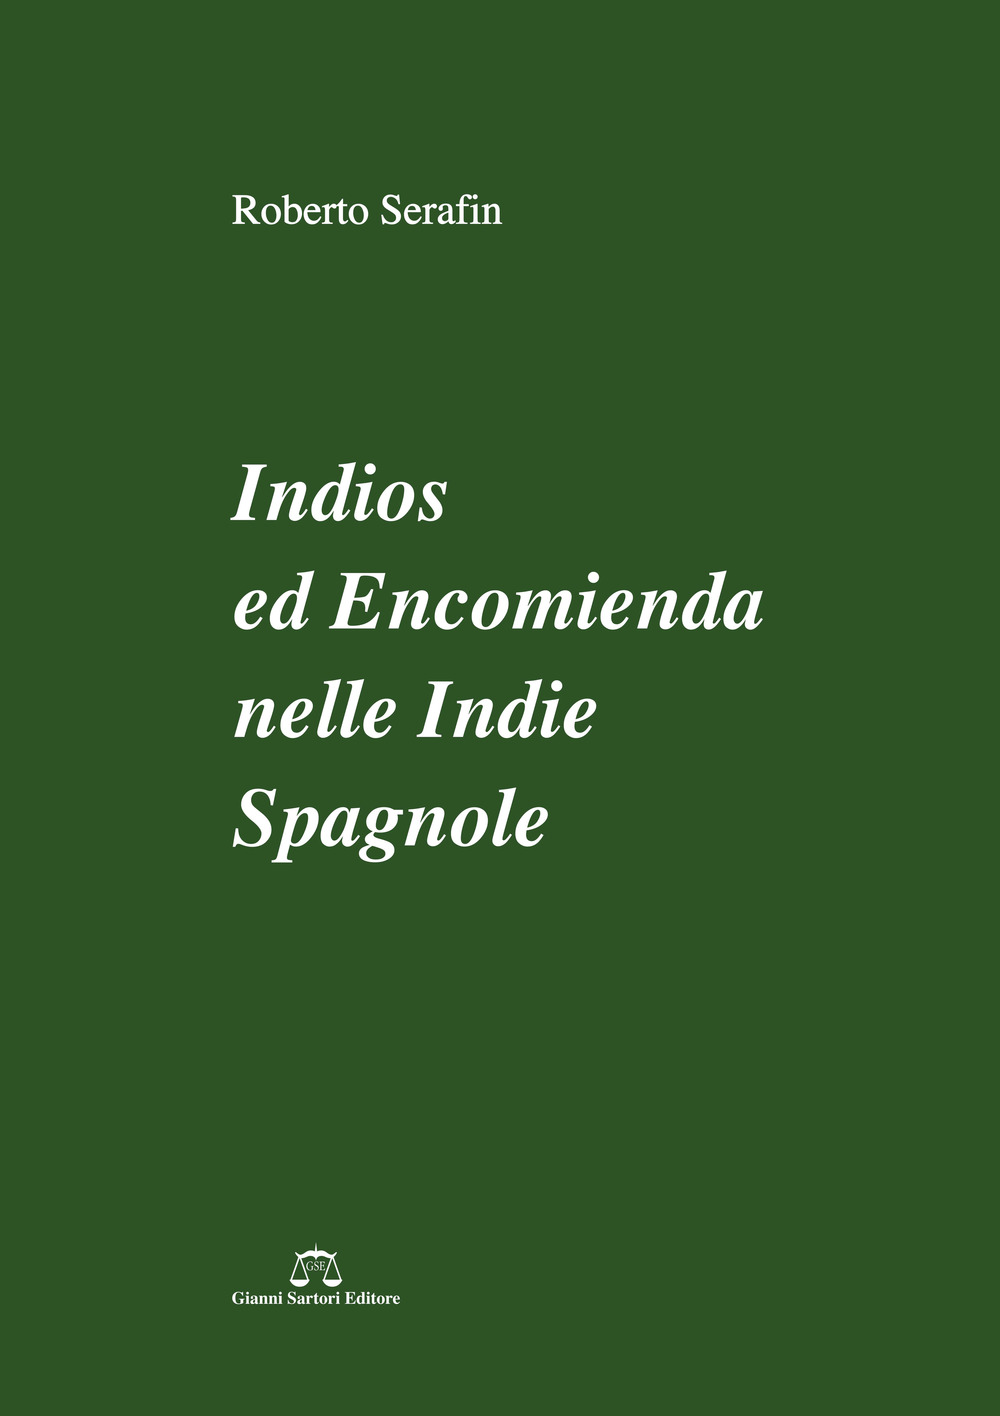 Indios ed encomienda nelle Indie spagnole